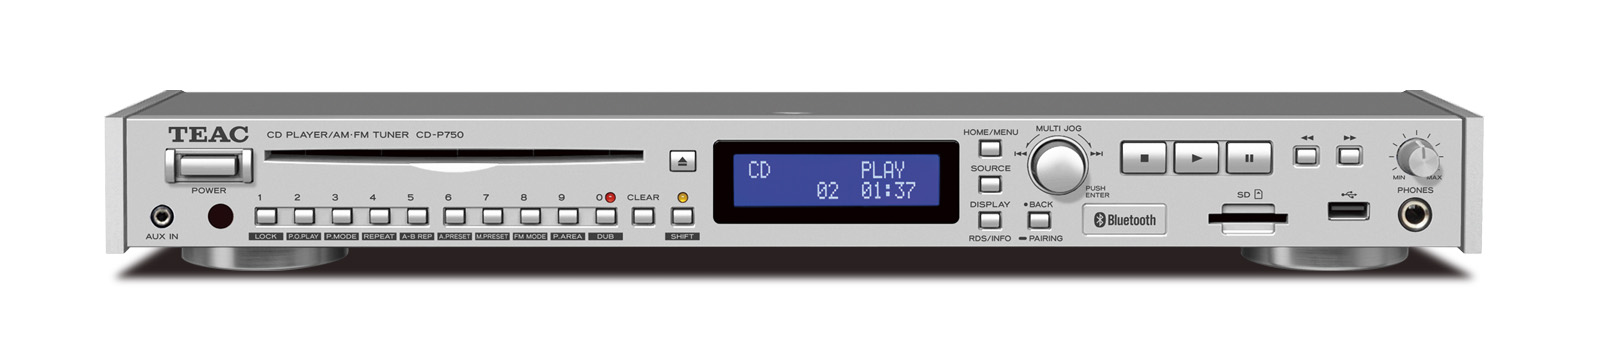 マルチな機能を搭載したCDプレーヤー『CD-P750』 12月3日より販売開始